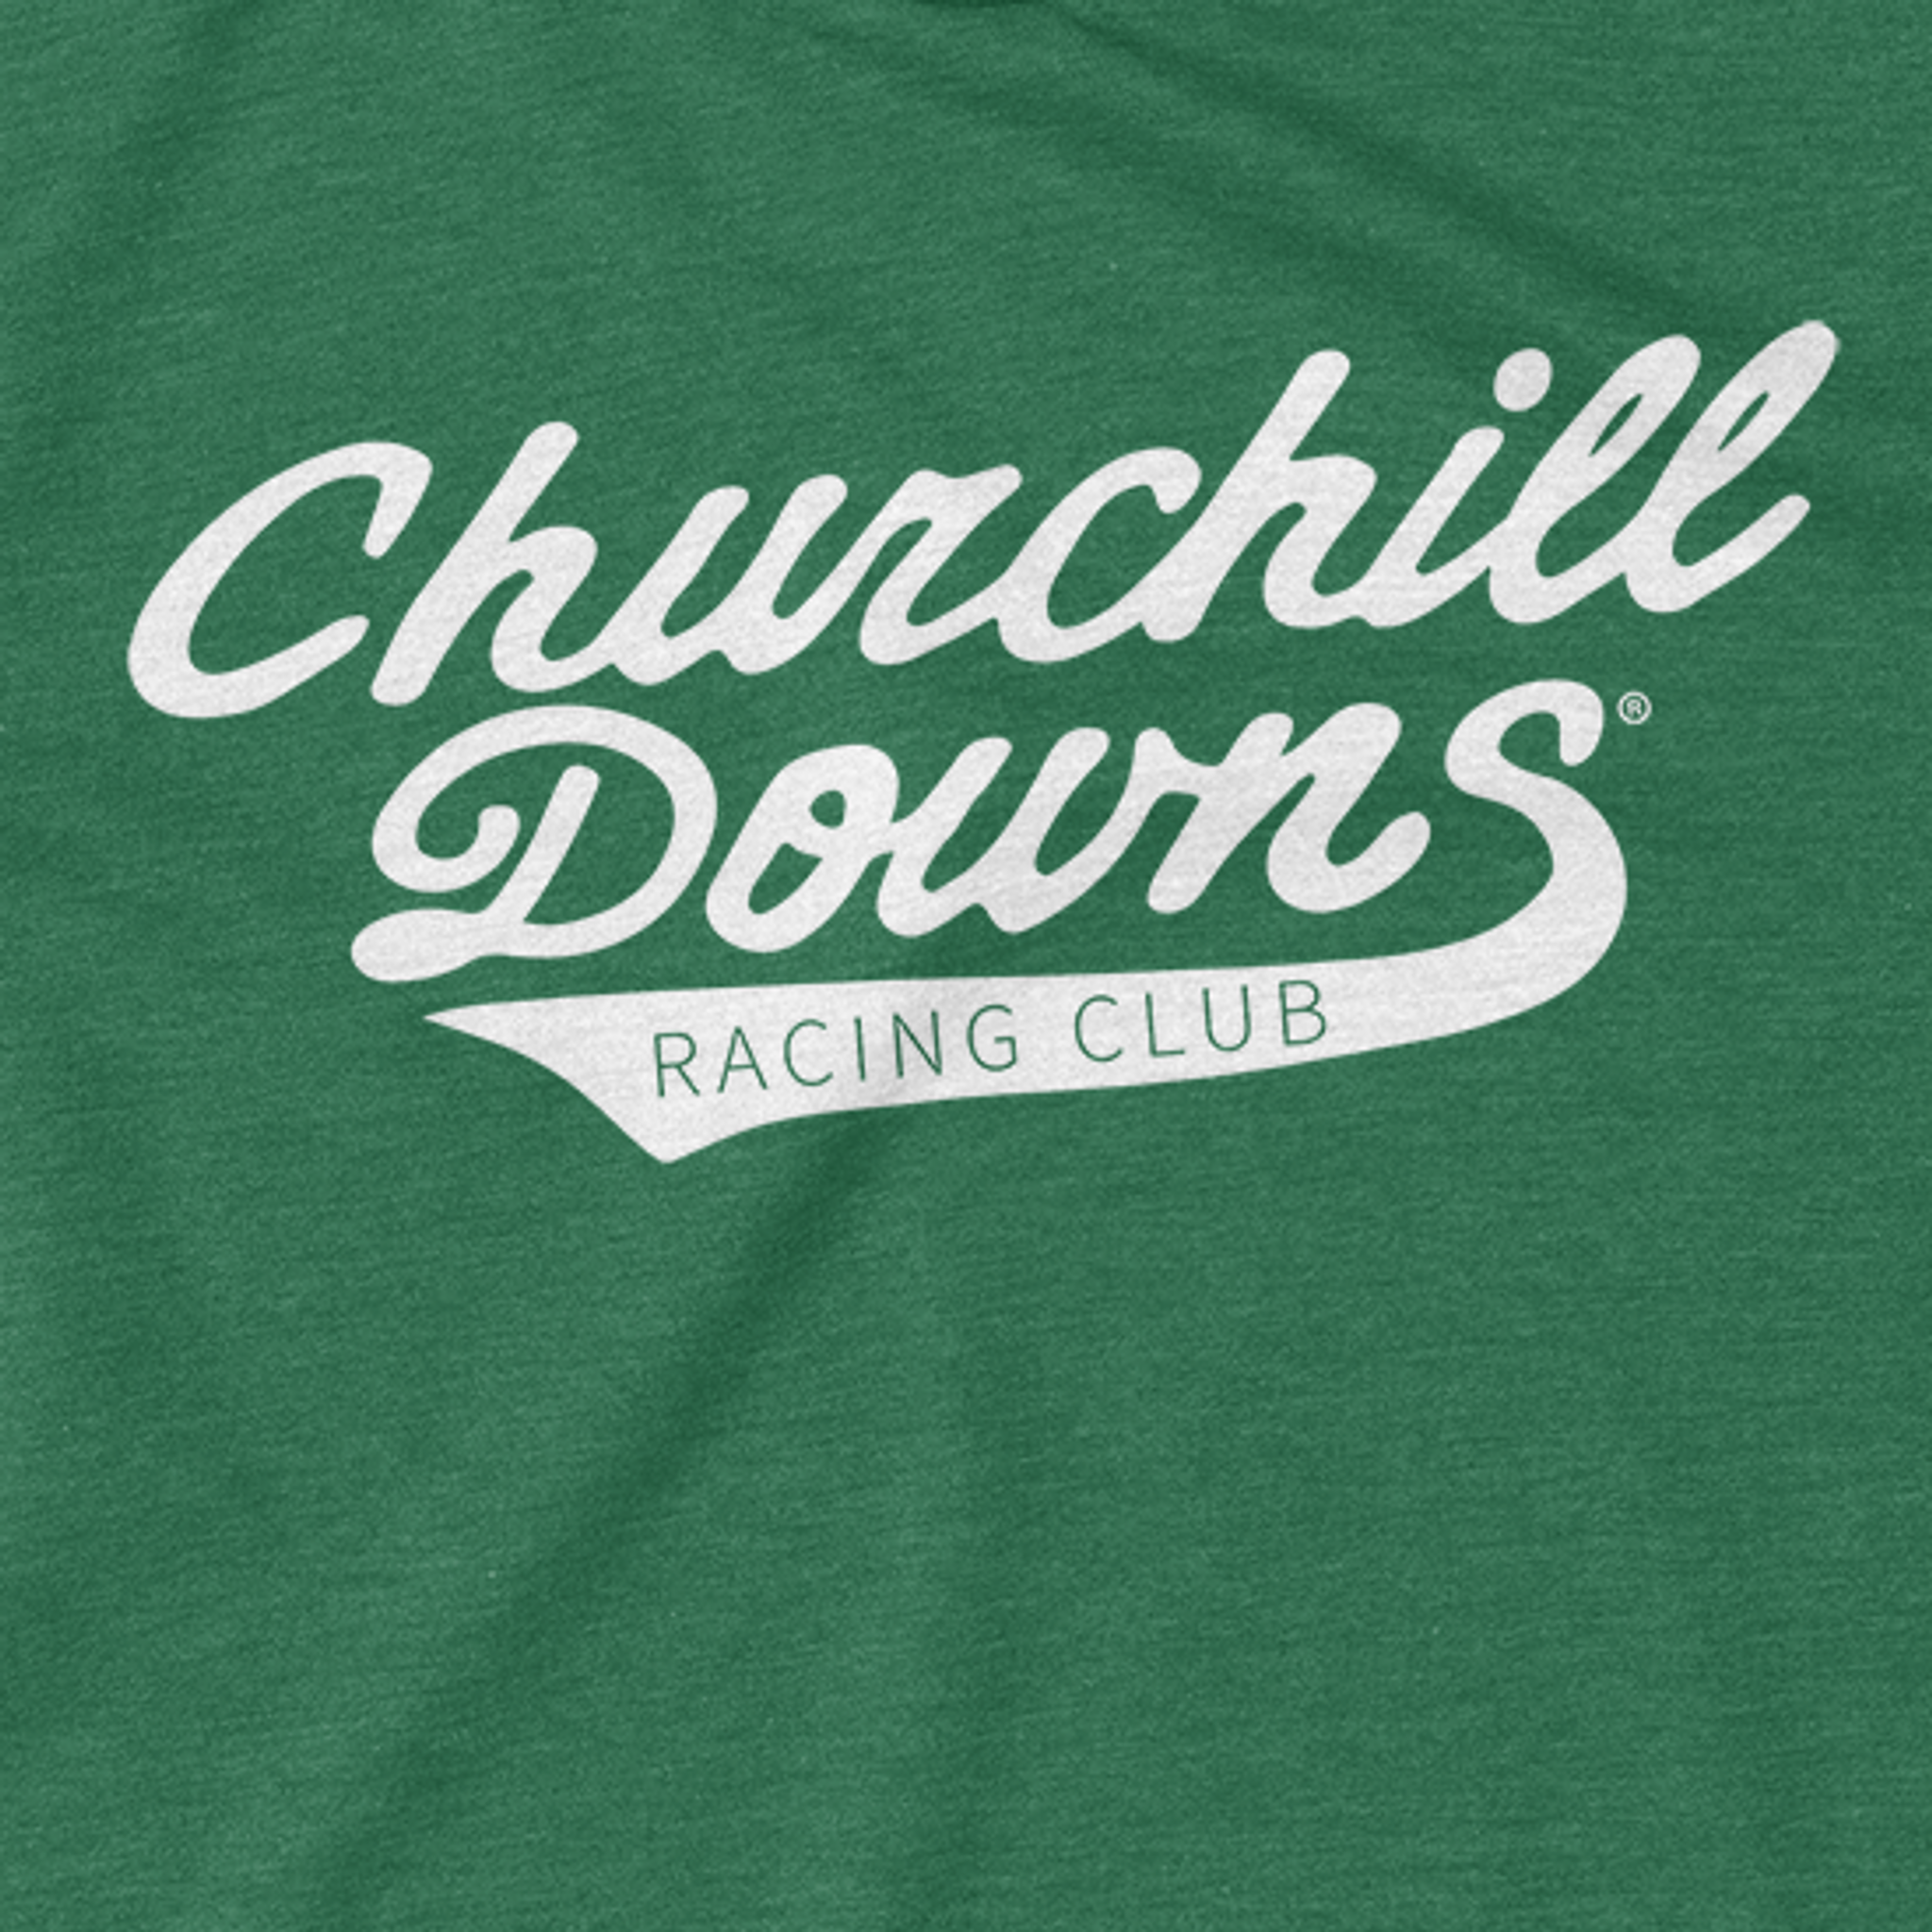 Churchill Downs Racing Club